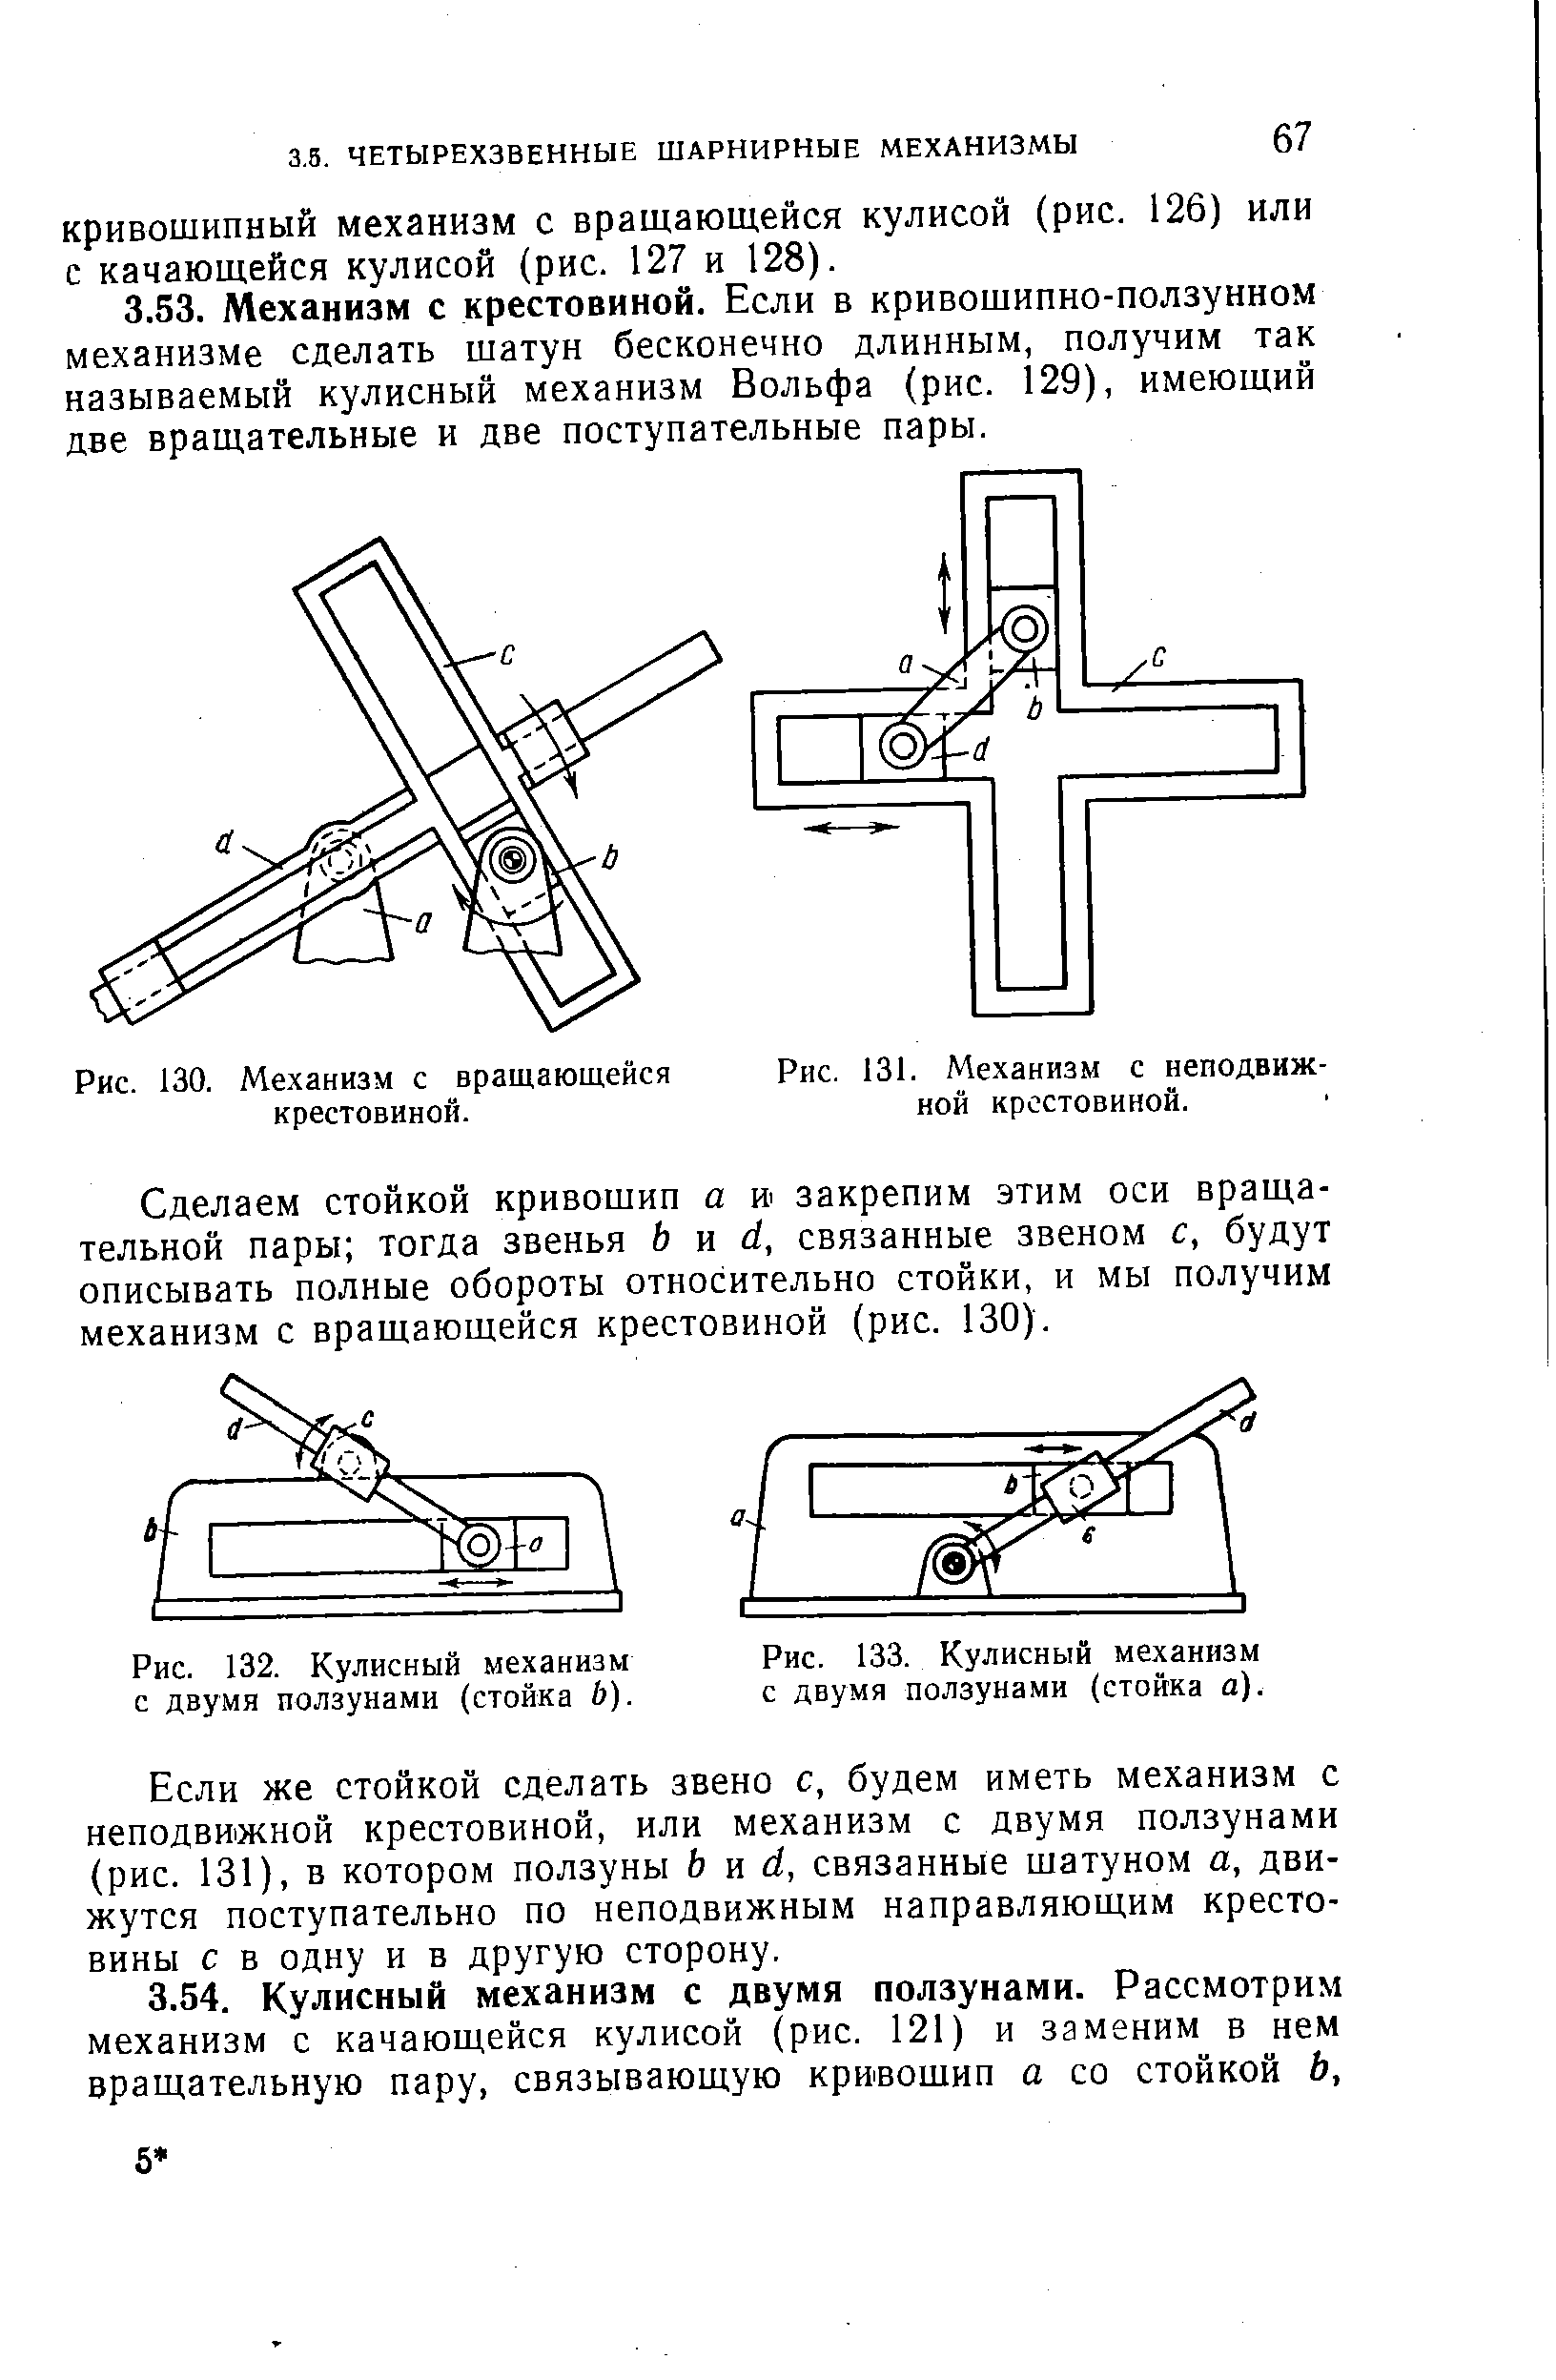 Рис. 132. Кулисный механизм с двумя ползунами (стойка Ь).
